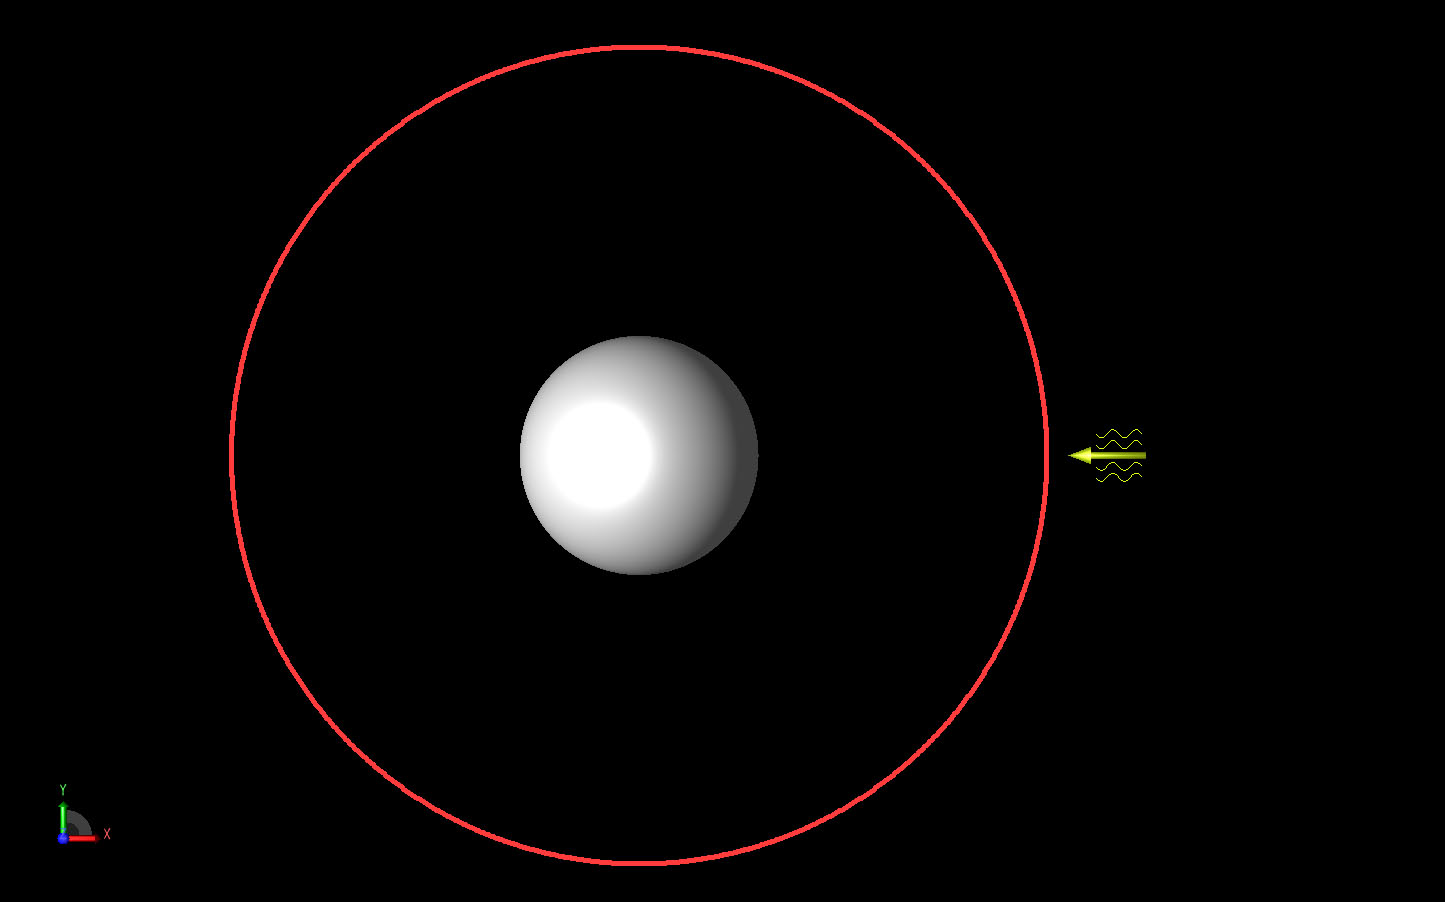 Abbildung 1Die Kugelgeometrie ist so dargestellt, dass die einfallende ebene Welle als gelber Pfeil nach rechts zeigt. Der rote Kreis stellt das Fernfeldmuster dar, das in der XY-Ebene berechnet werden soll.